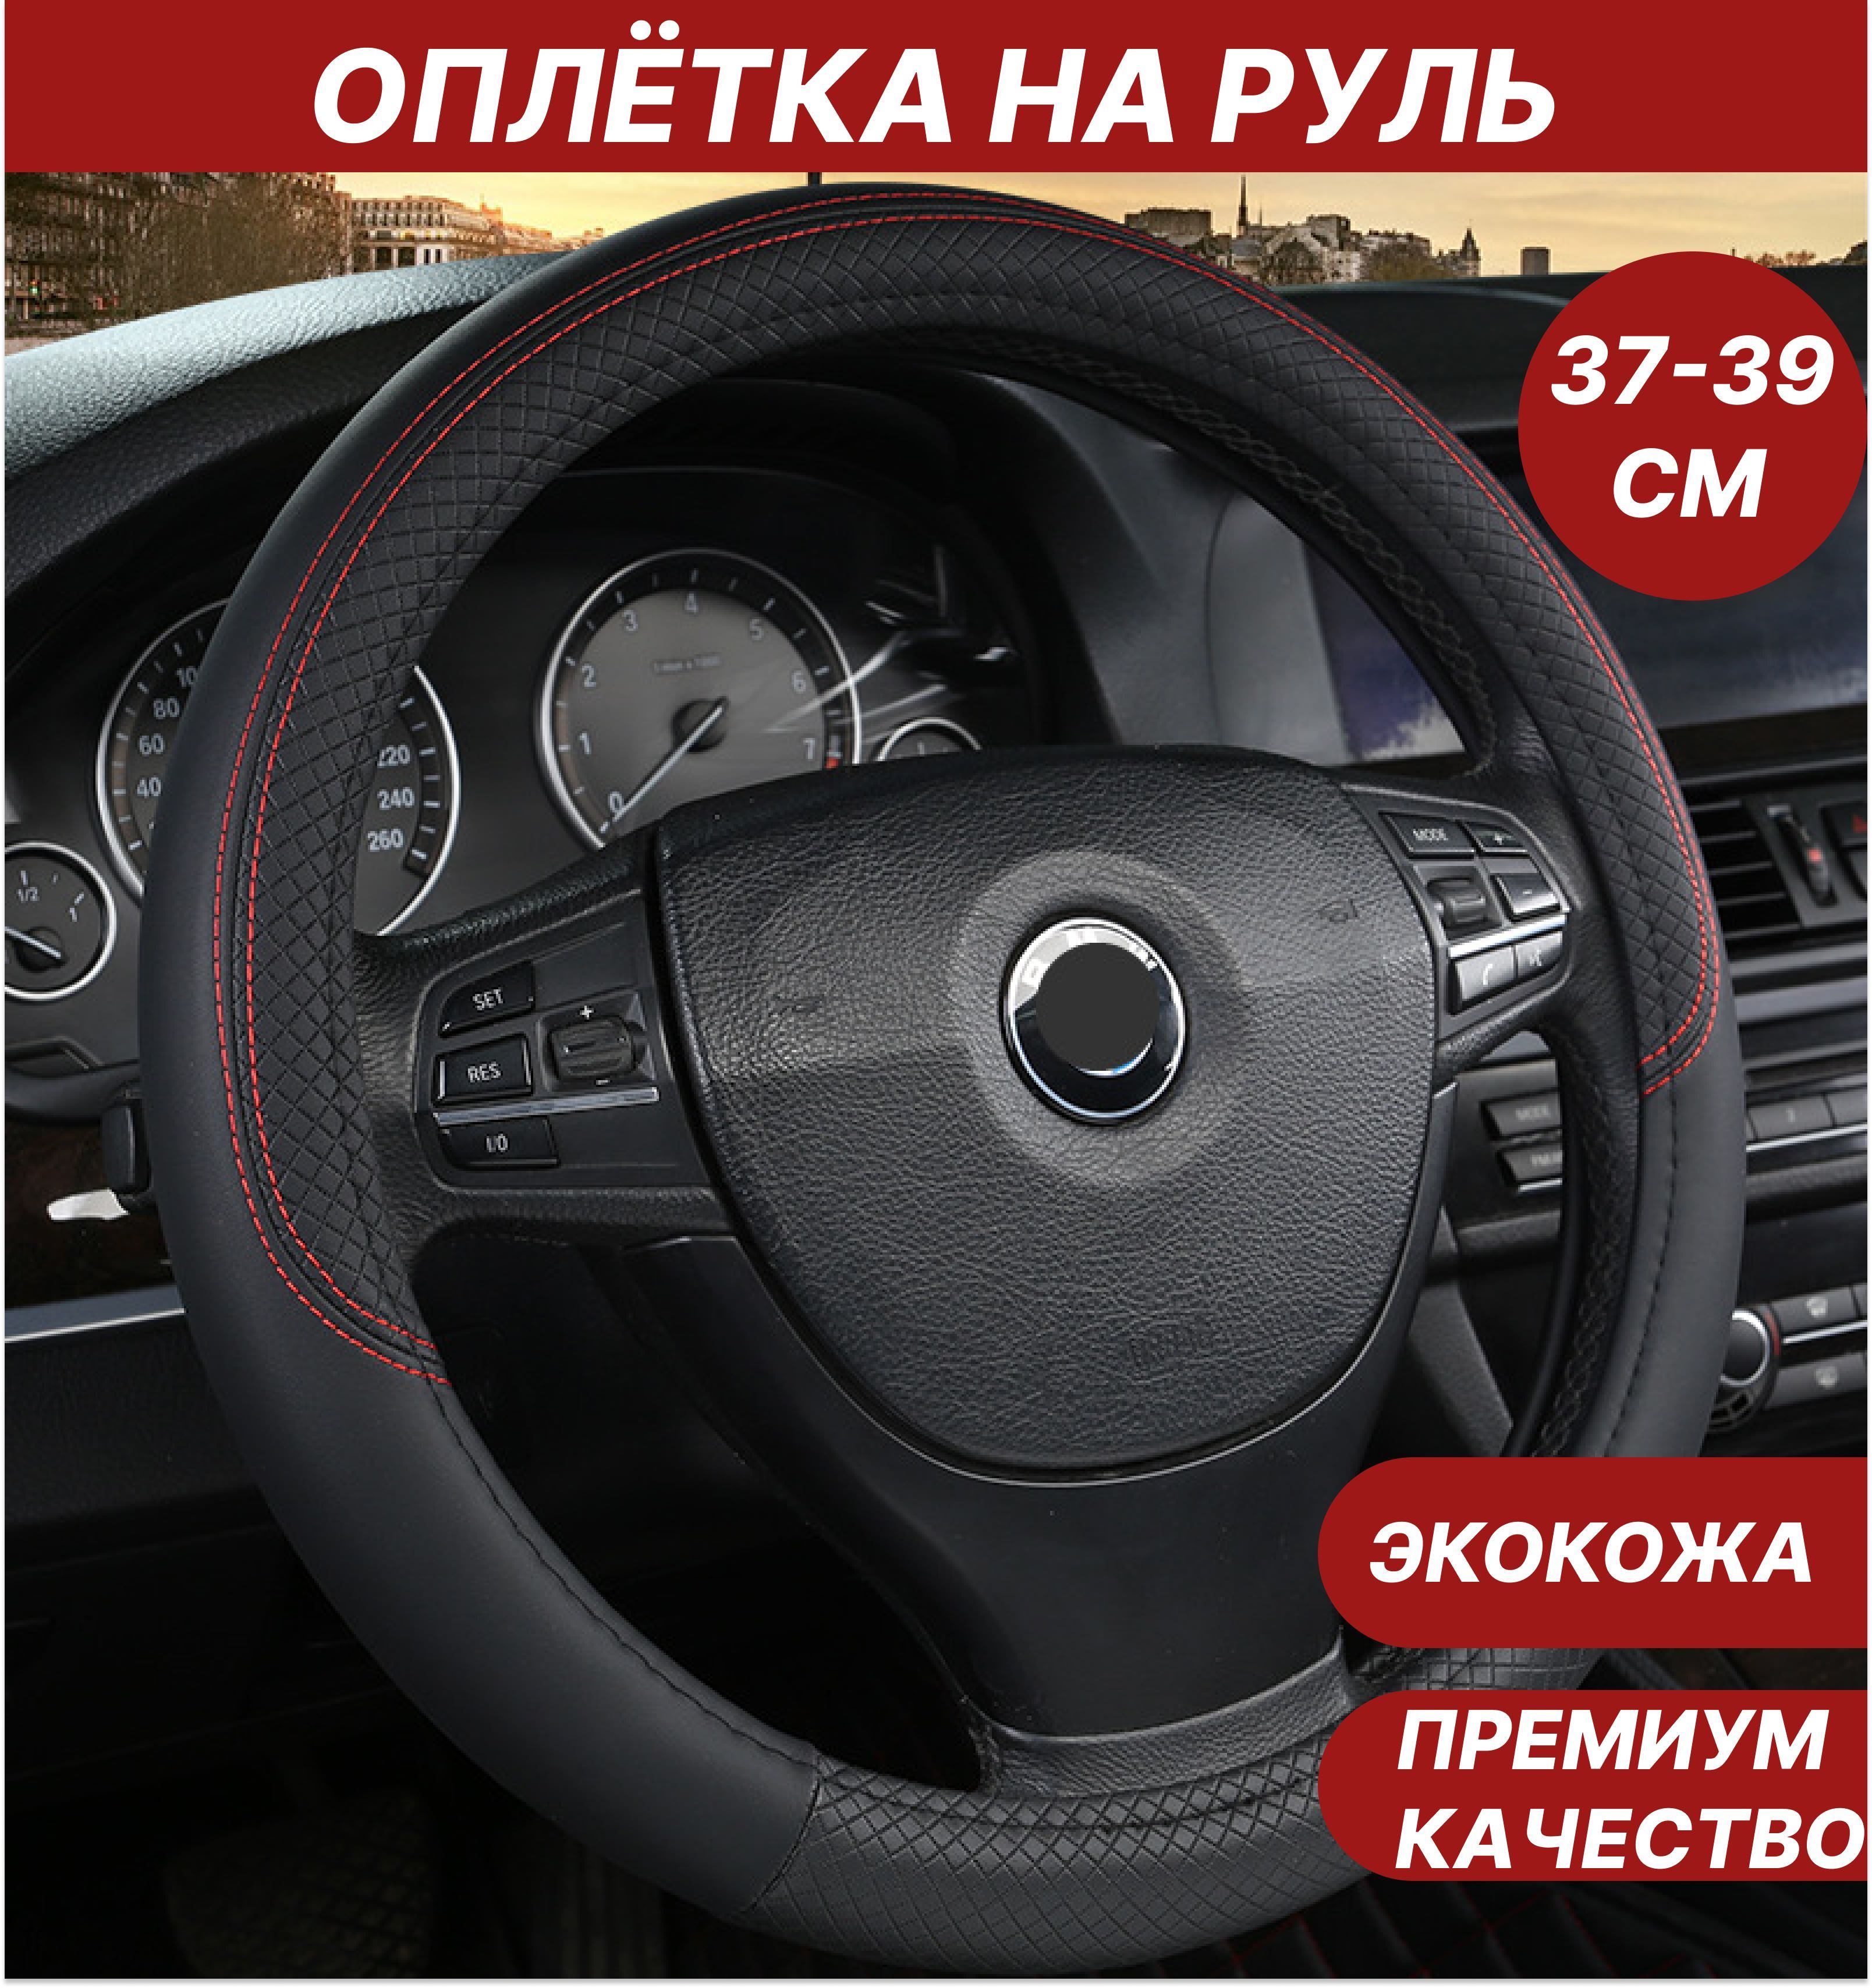 Автоаксессуары для авто Алексеевка - руль